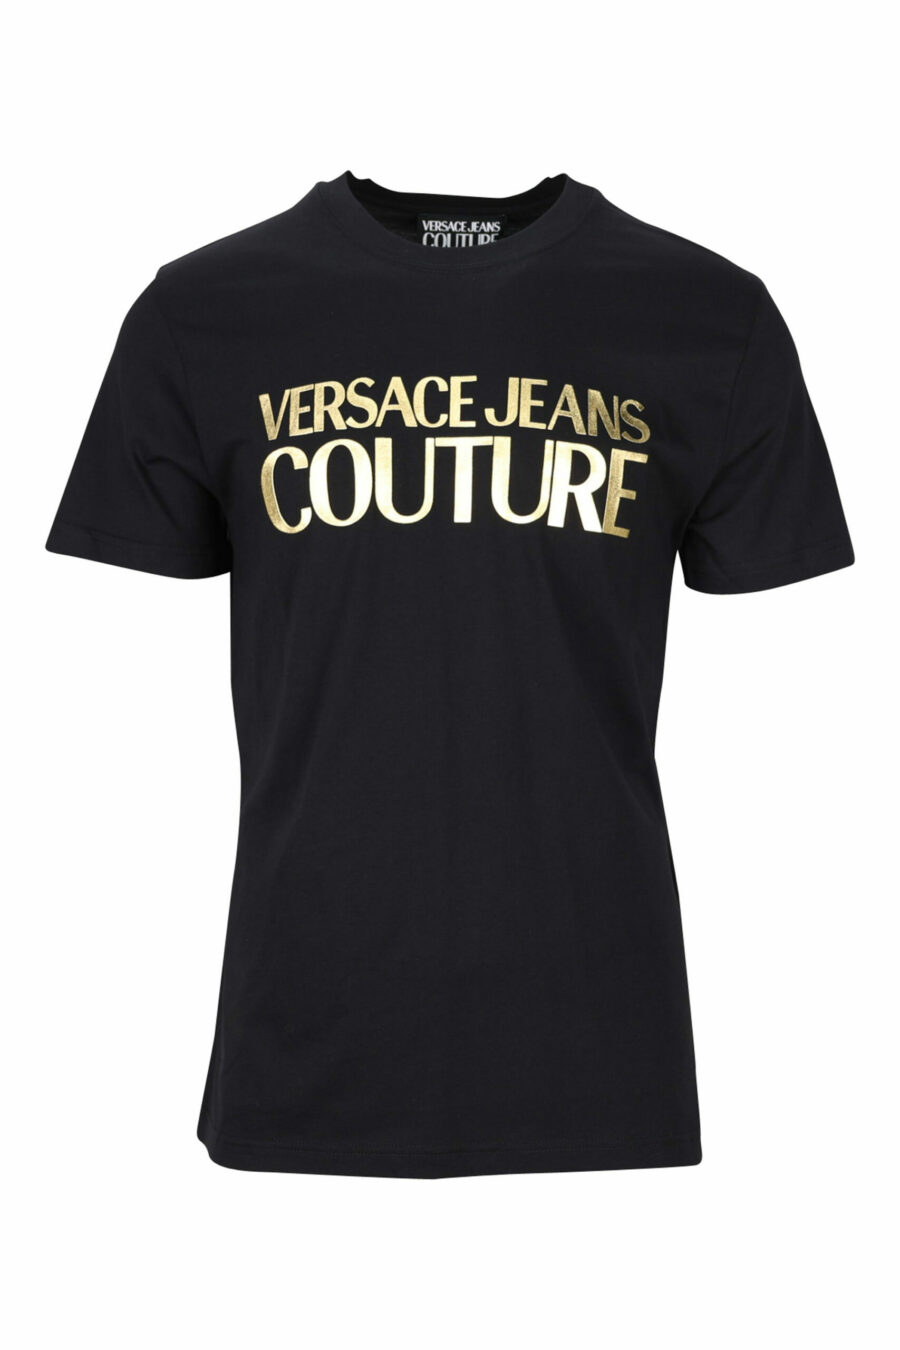 T-shirt preta com maxilogue clássico dourado brilhante - 8052019456783 scaled